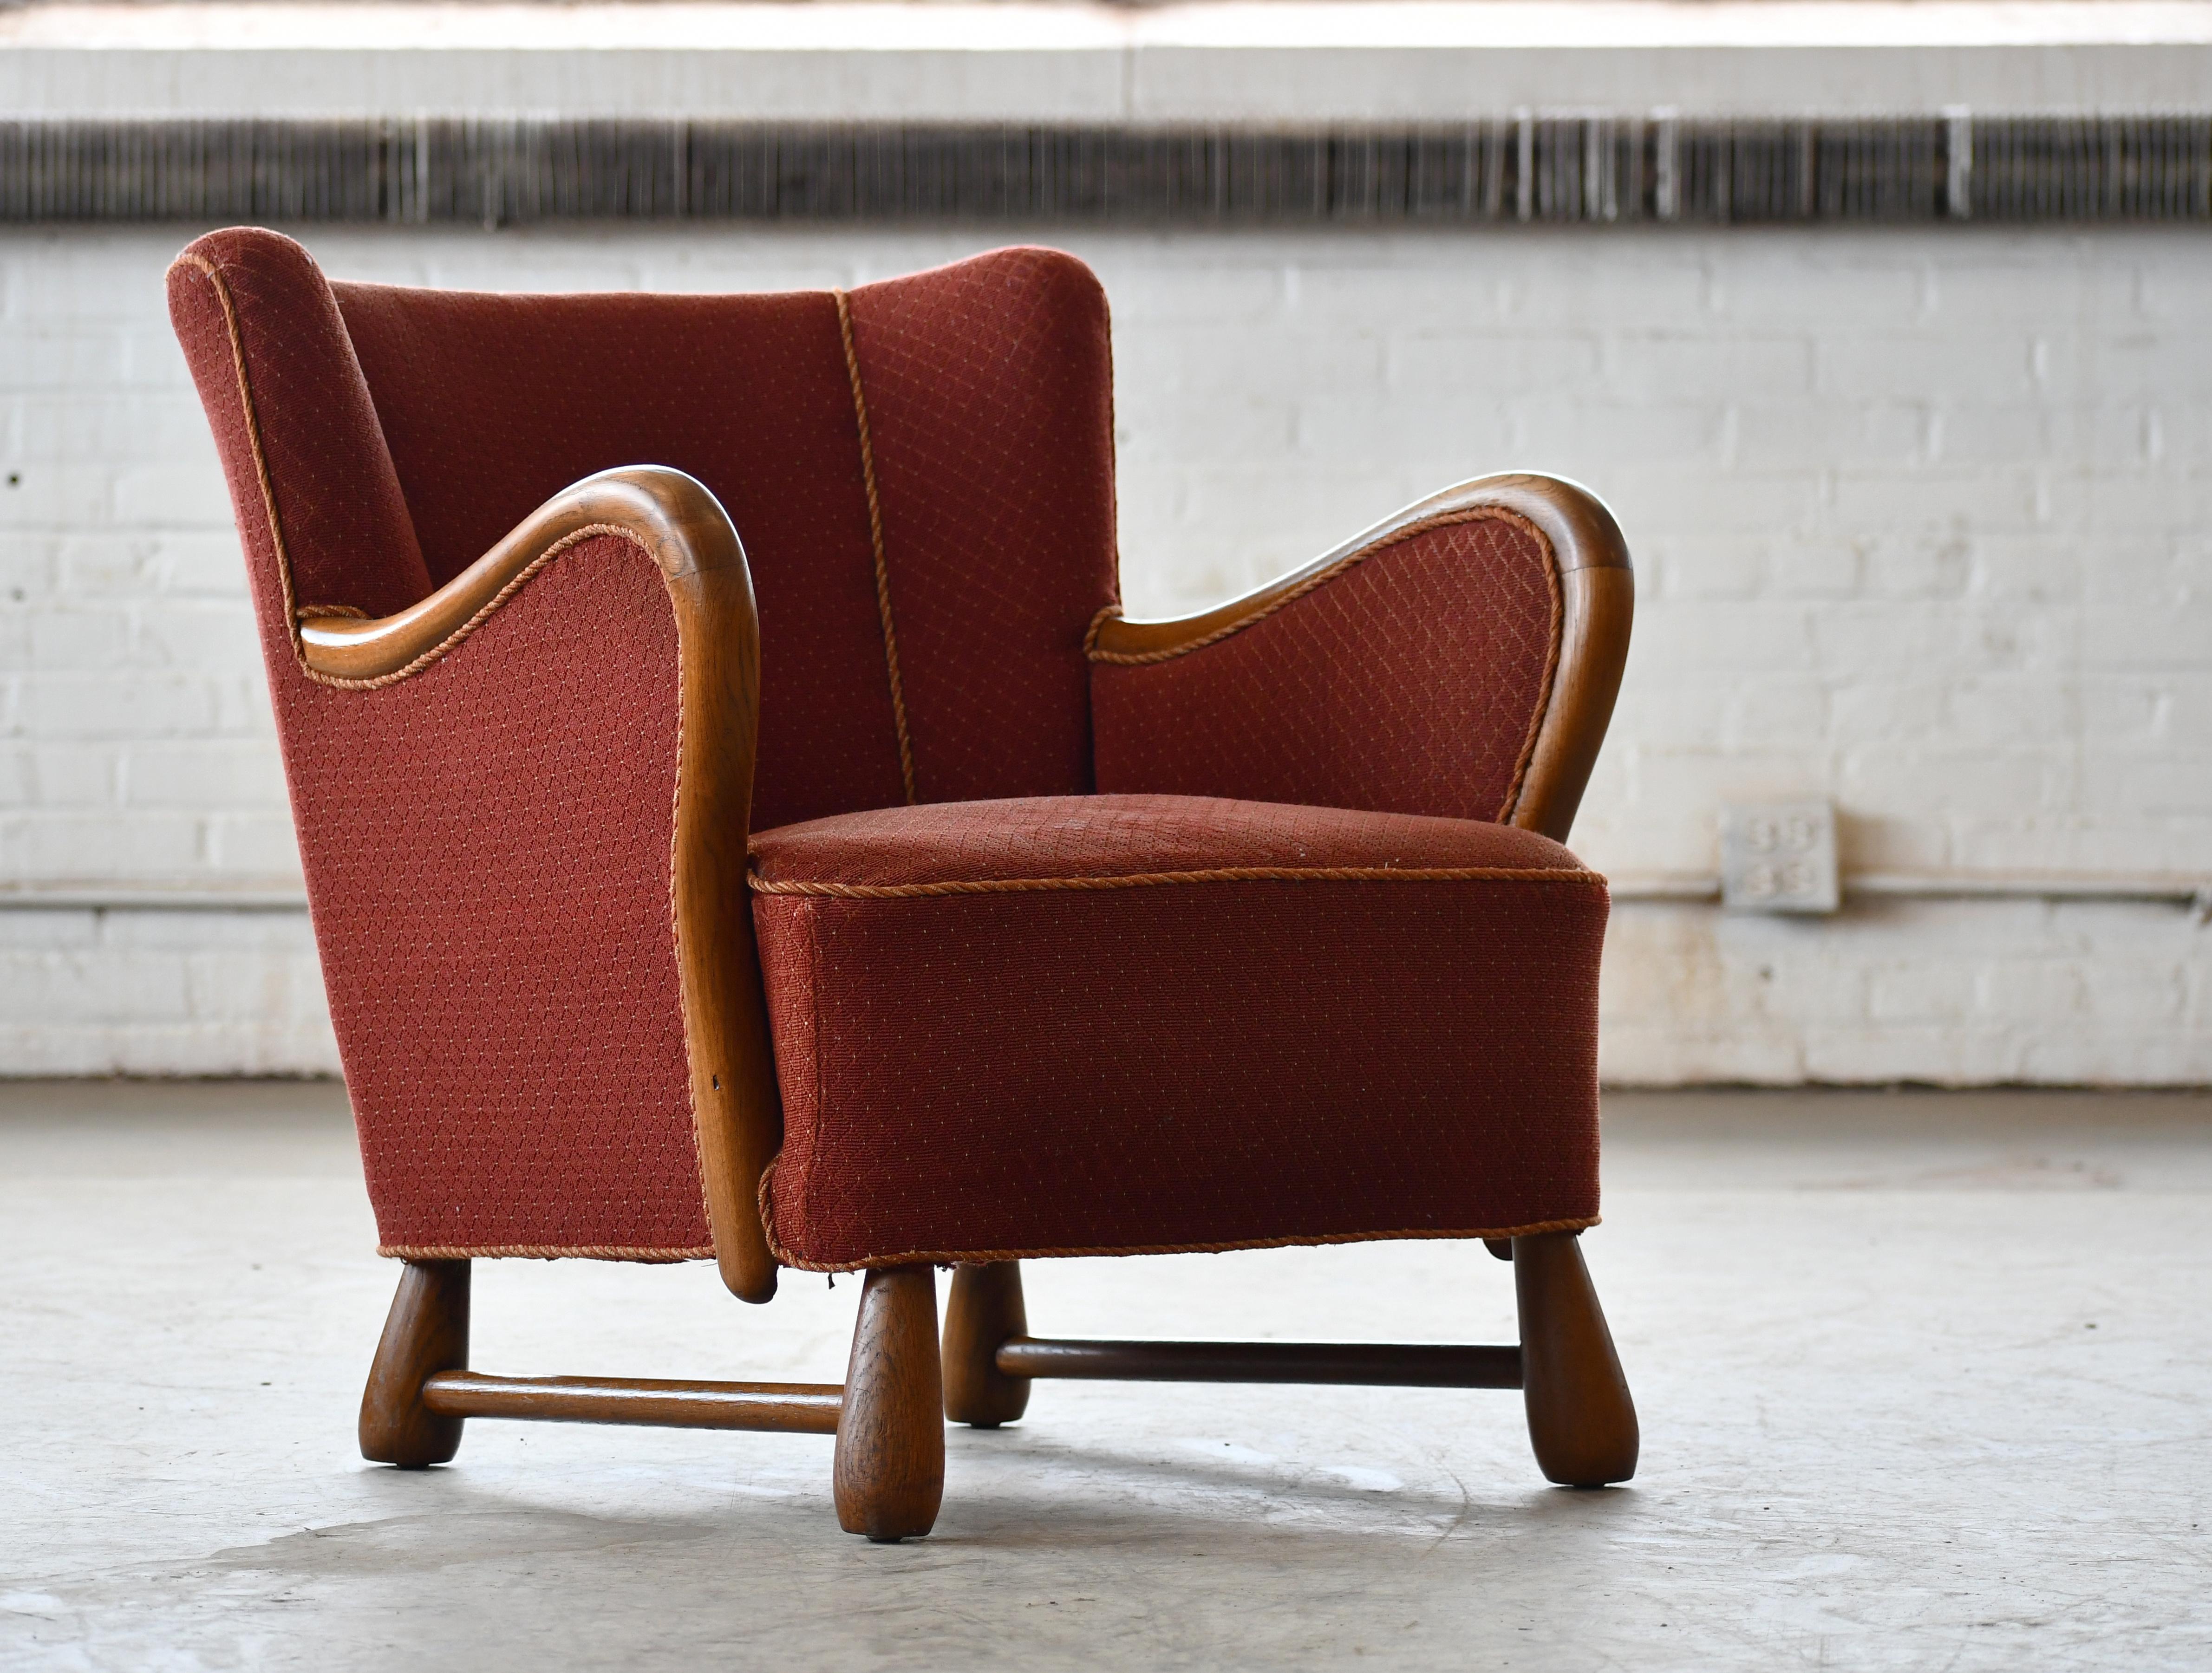 Sehr charmanter und bequemer dänischer Sessel aus der Zeit des Art Deco, der Otto Færge zugeschrieben wird. Die Möbel von Færge erinnern sehr an einen anderen dänischen Meister, Viggo Boesen, und sind sehr begehrt und schwer zu finden. Sehr hohe